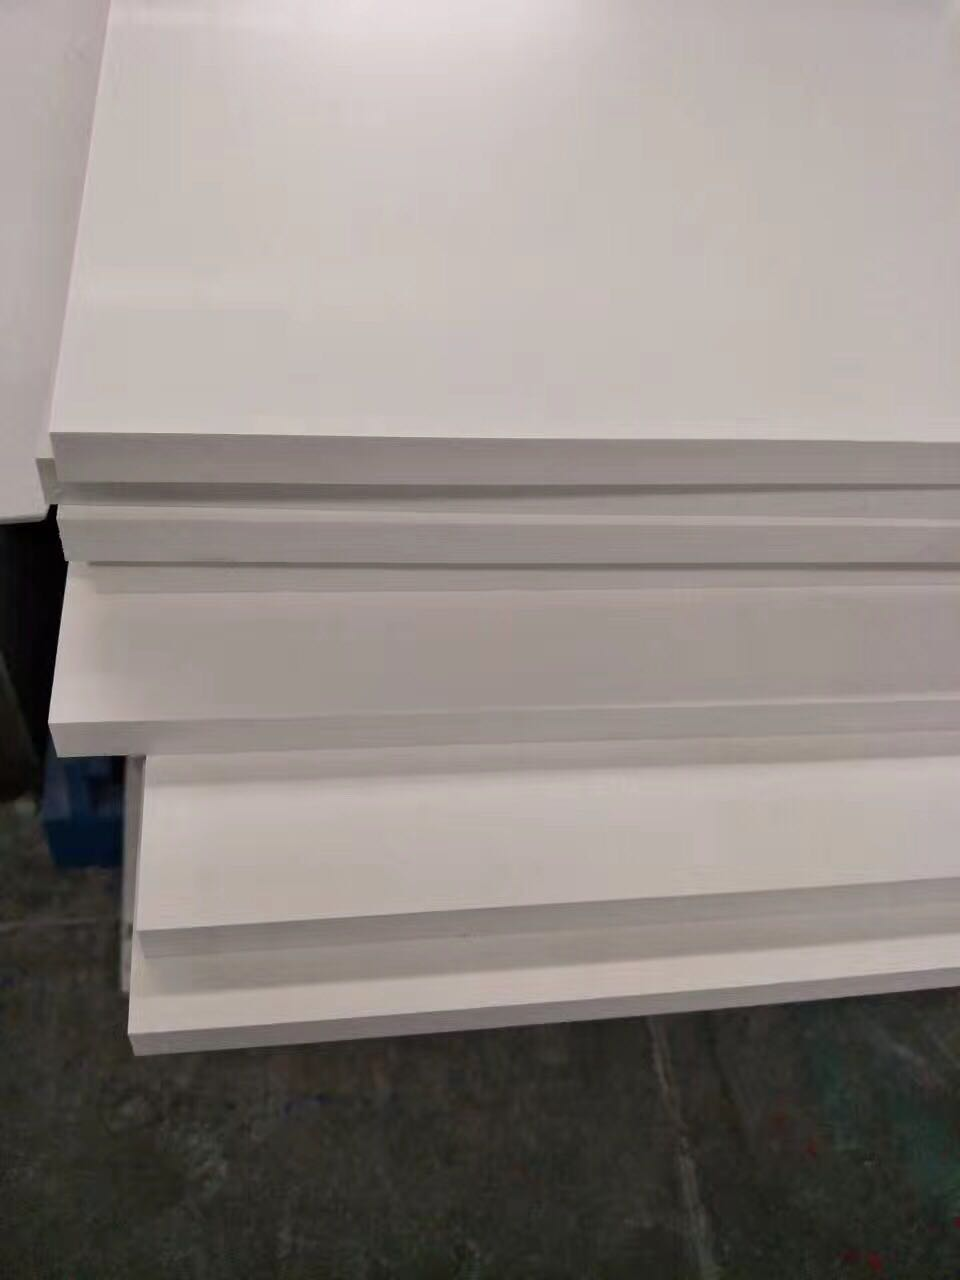 Expanded PVC Foam Board